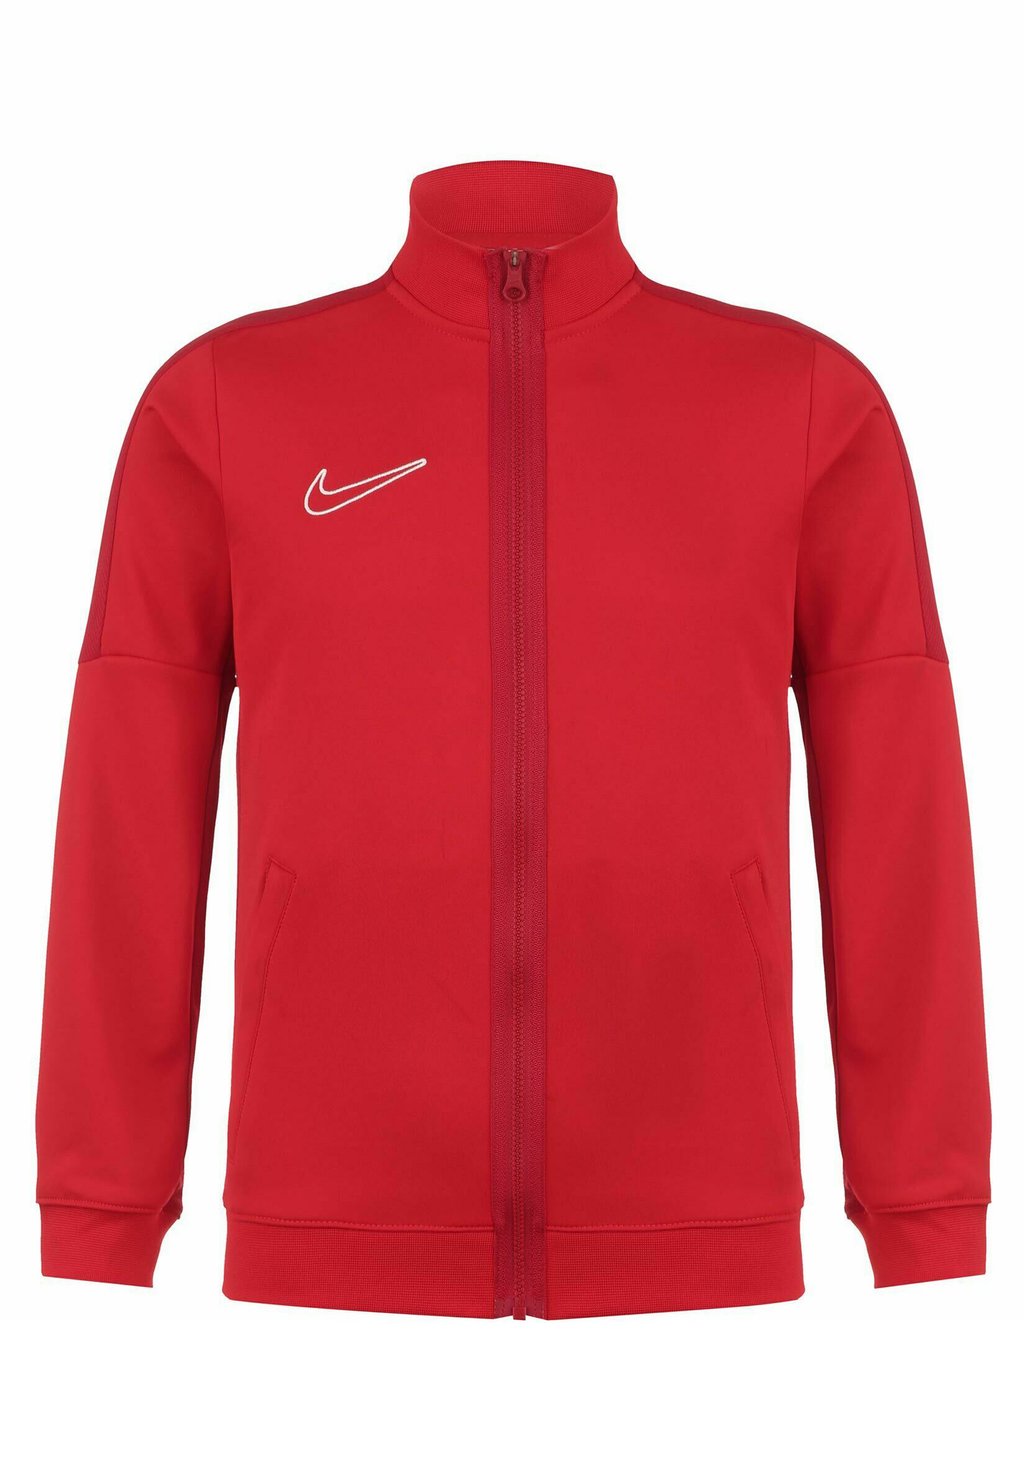 Спортивная куртка Academy Nike, цвет university red gym/red /white шорты nike woven hbr shorts цвет university red gym red white